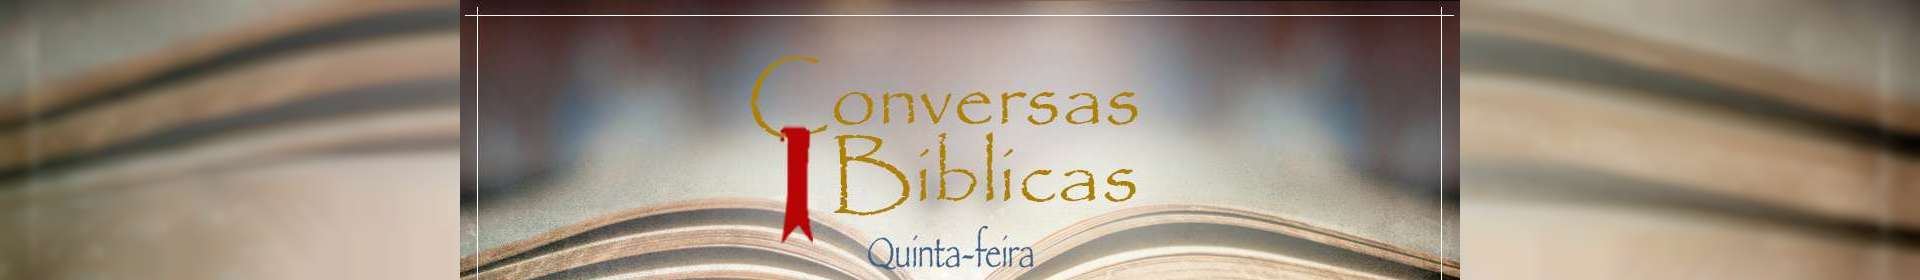 Conversas Bíblicas: Israel e a igreja - Parte 2